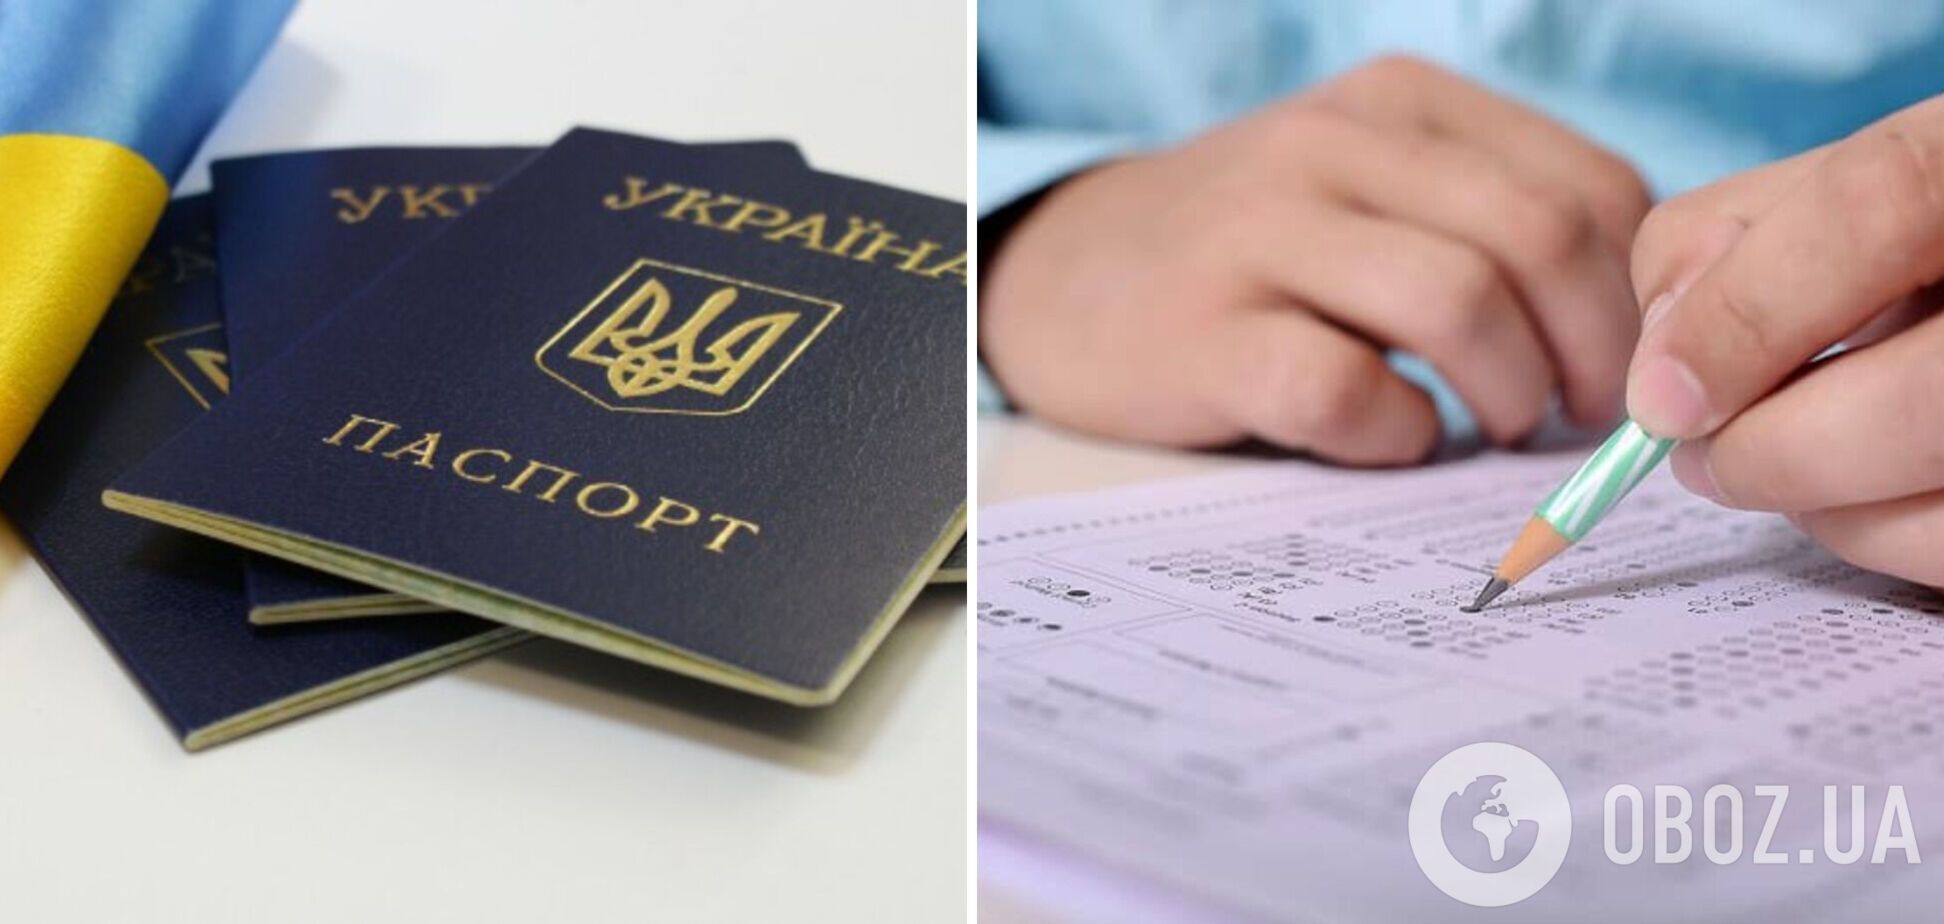 В Украине условием принятия в гражданство будет сдача экзаменов, в частности на владение украинским языком: детали решения